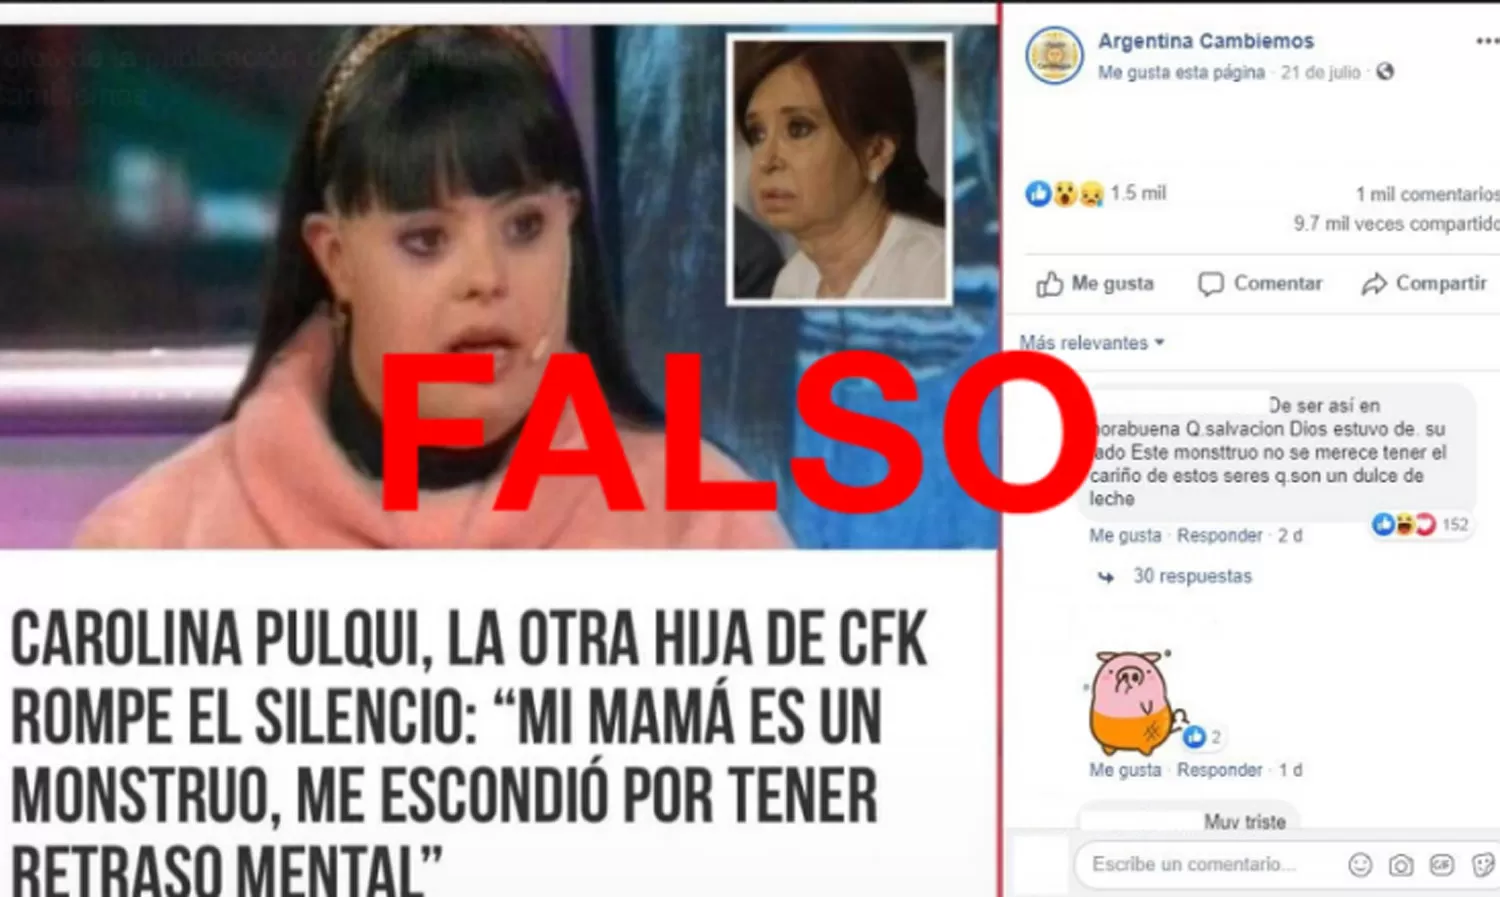 Es falso que Cristina Fernández tiene una “hija escondida” con síndrome de down